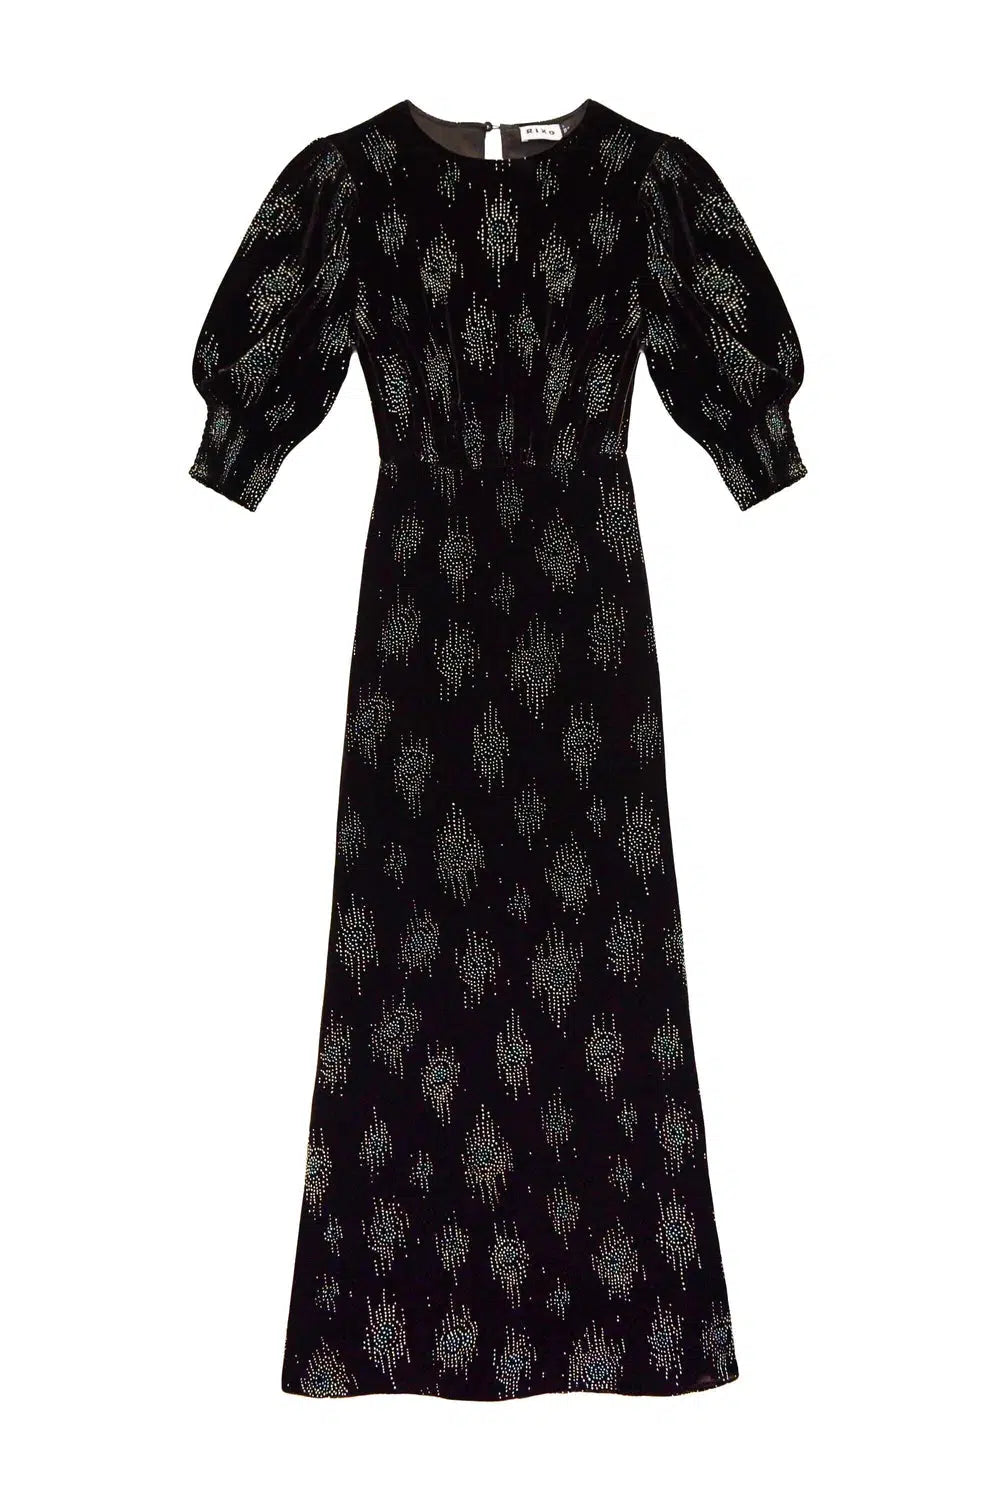 Lucile Dress Droplet Glitter
Black-Dress-Rixo-Debs Boutique